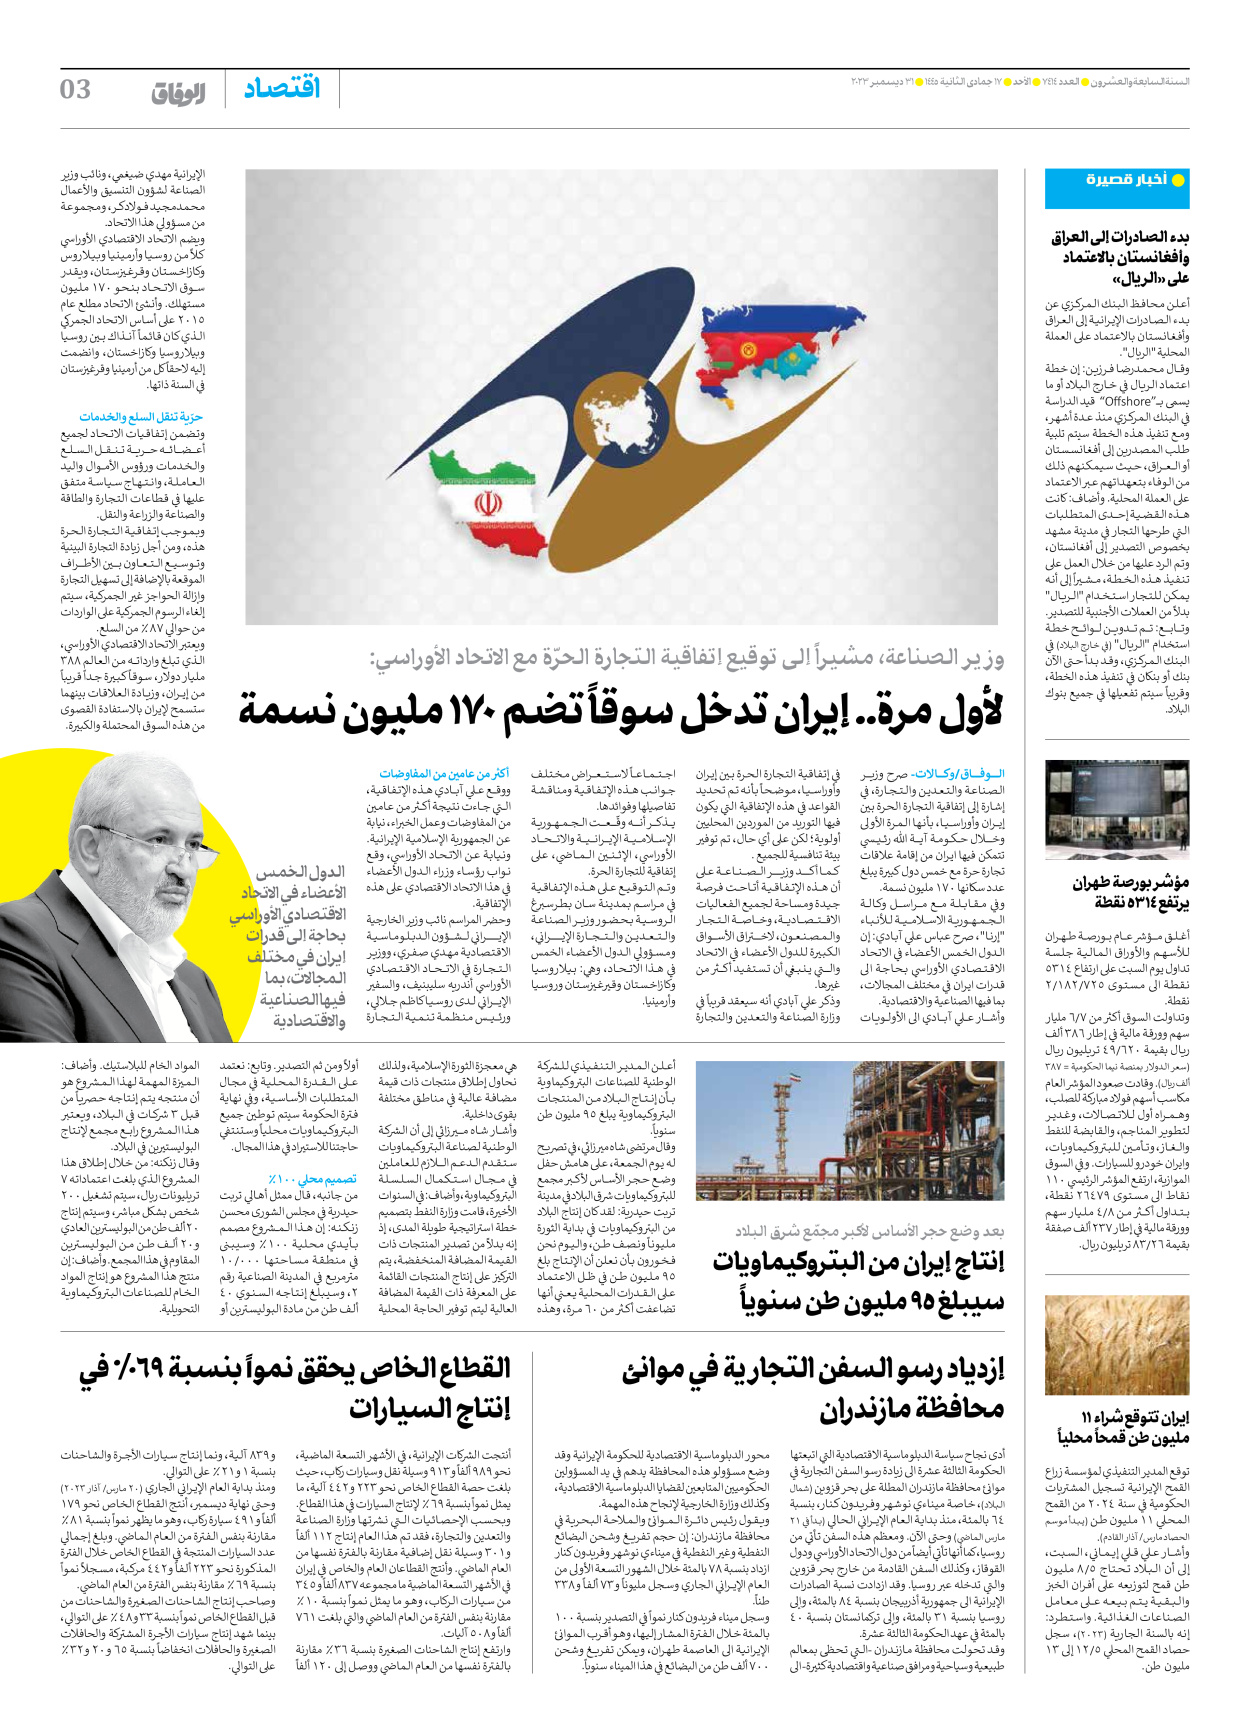 صحیفة ایران الدولیة الوفاق - العدد سبعة آلاف وأربعمائة وأربعة عشر - ٣١ ديسمبر ٢٠٢٣ - الصفحة ۳